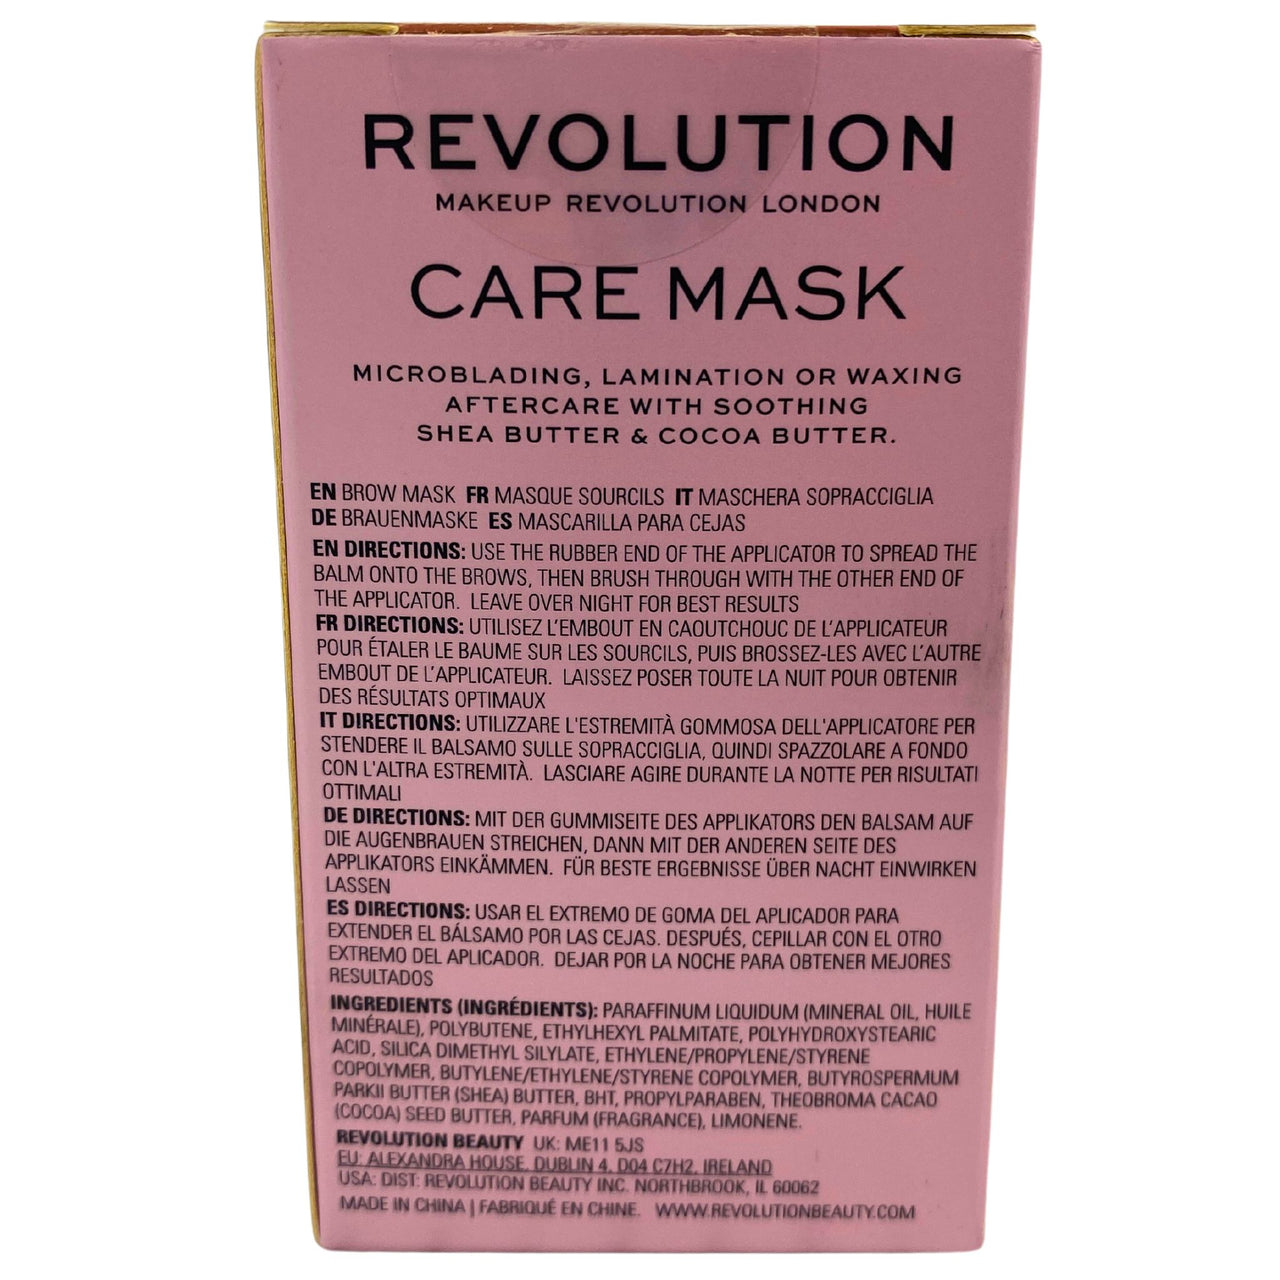 Revolution Brow Care Mask 0.42OZ